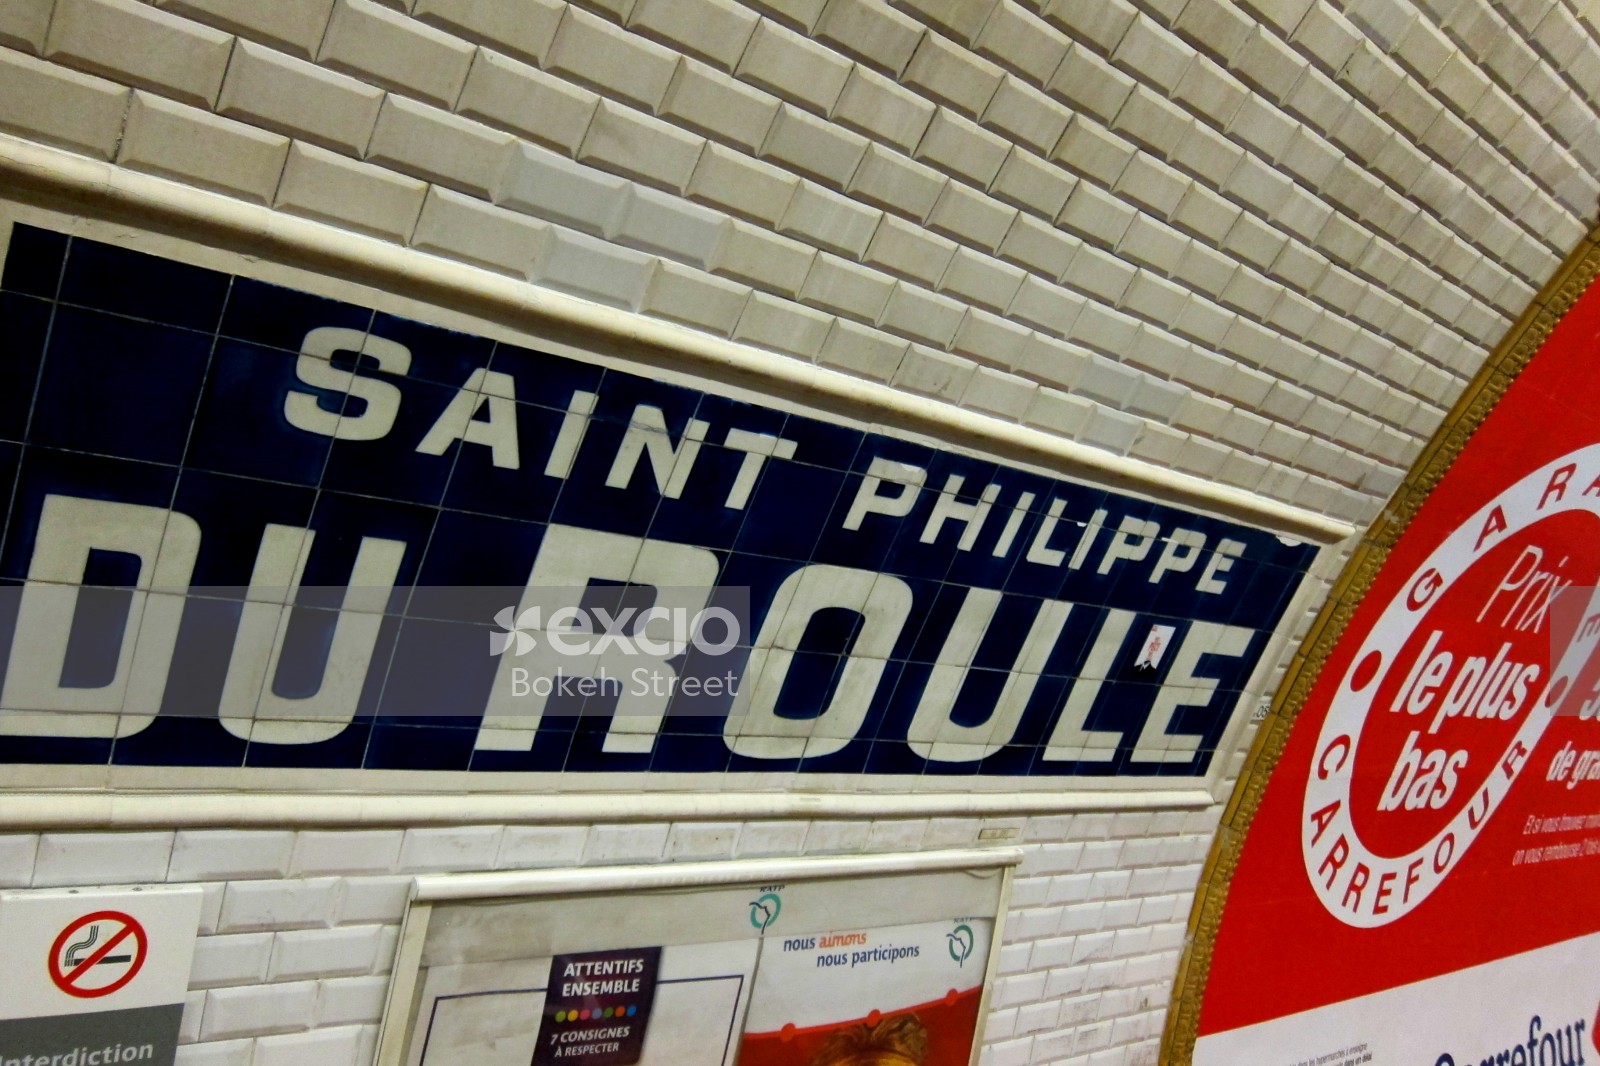 Saint Philippe du Roule station Paris Metro